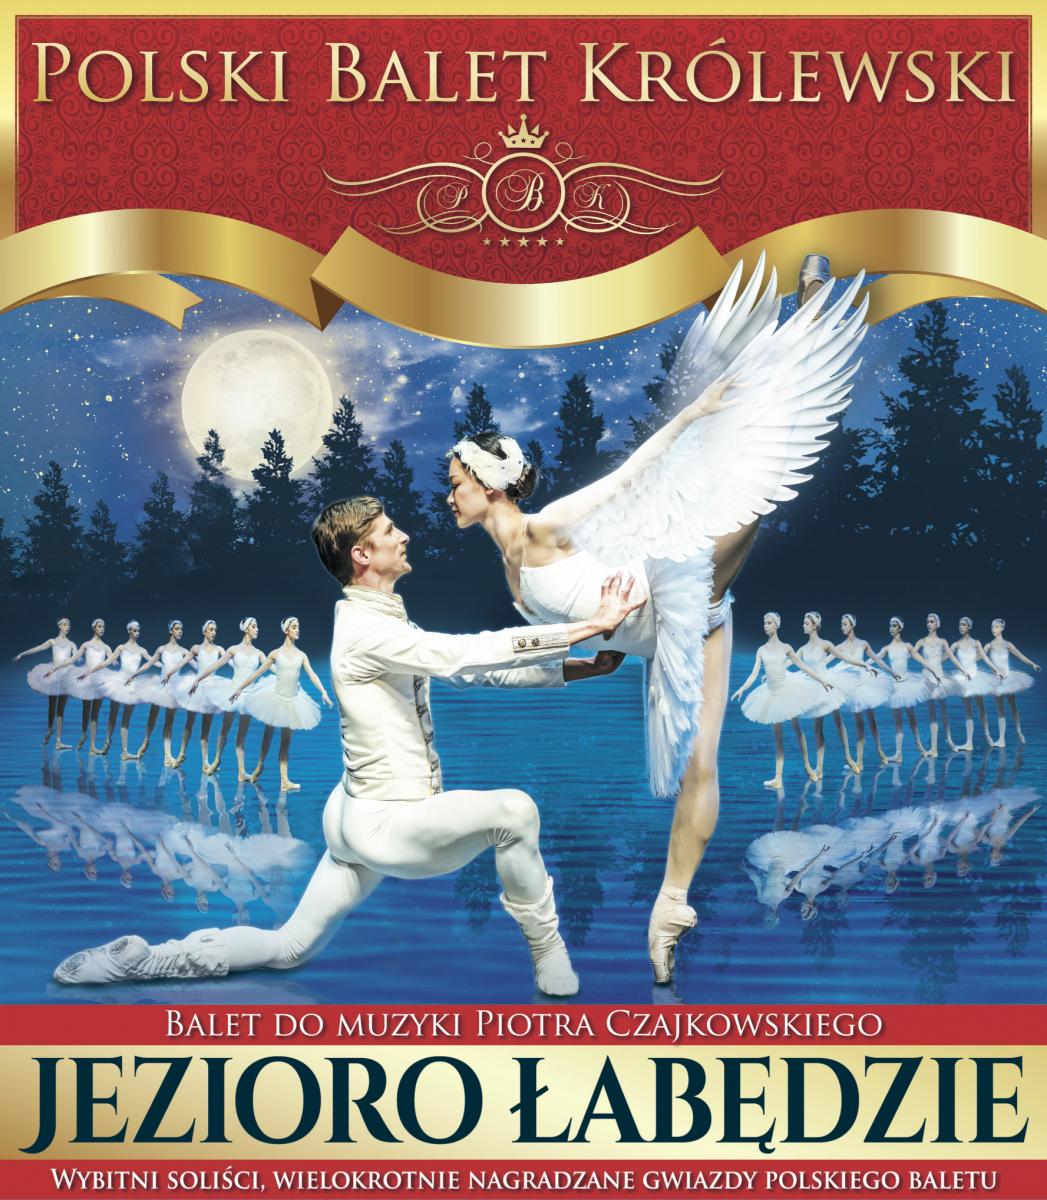  Polski Balet Królewski: Jezioro łabędzie Na zdjęciu plakat imprezy